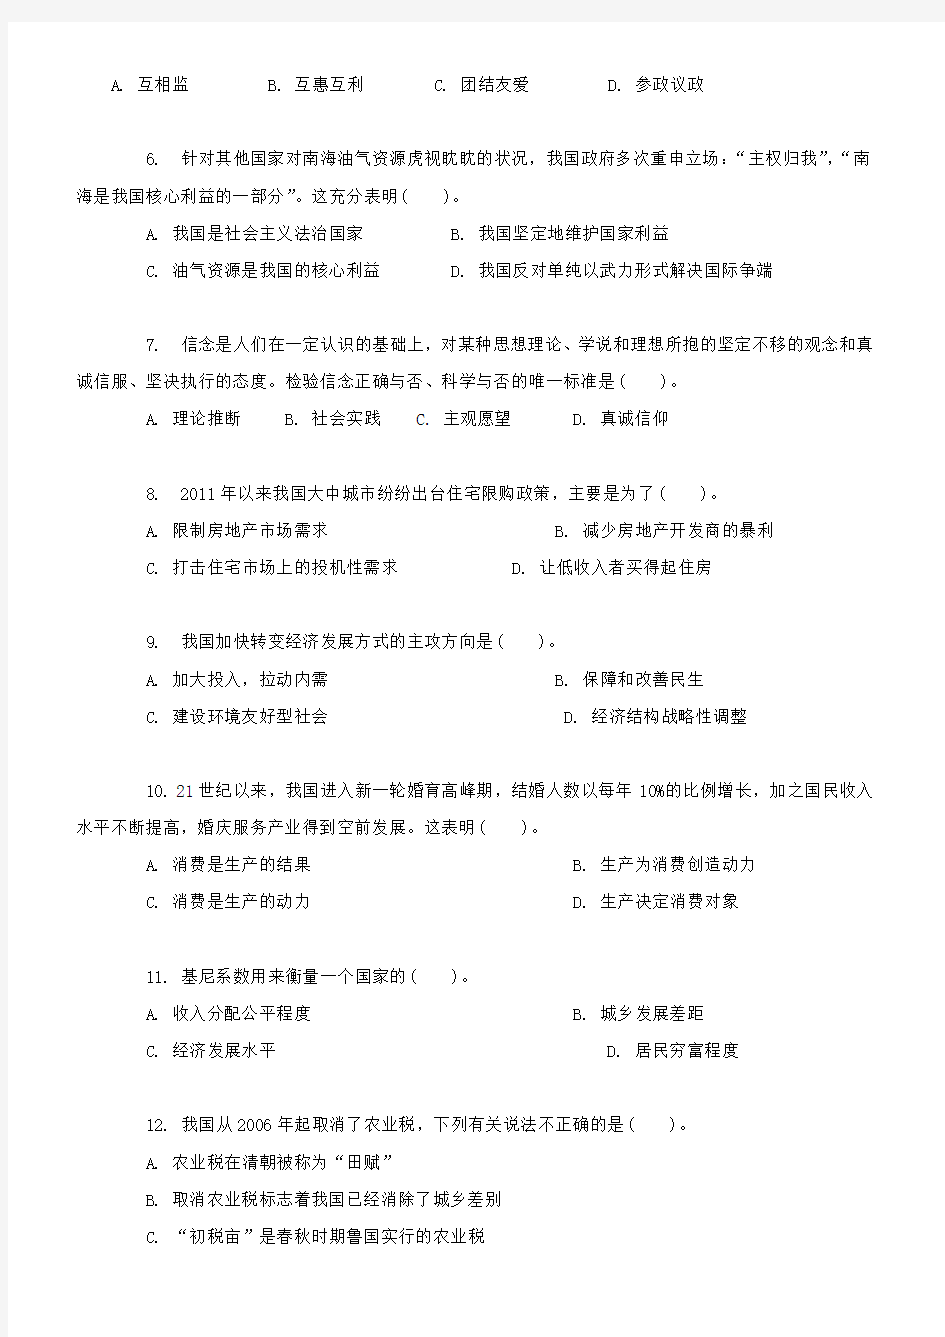 2015年国家公务员考试 押密试卷及答案 北京市公务员考试__行测真题及答案解析_(完整版)